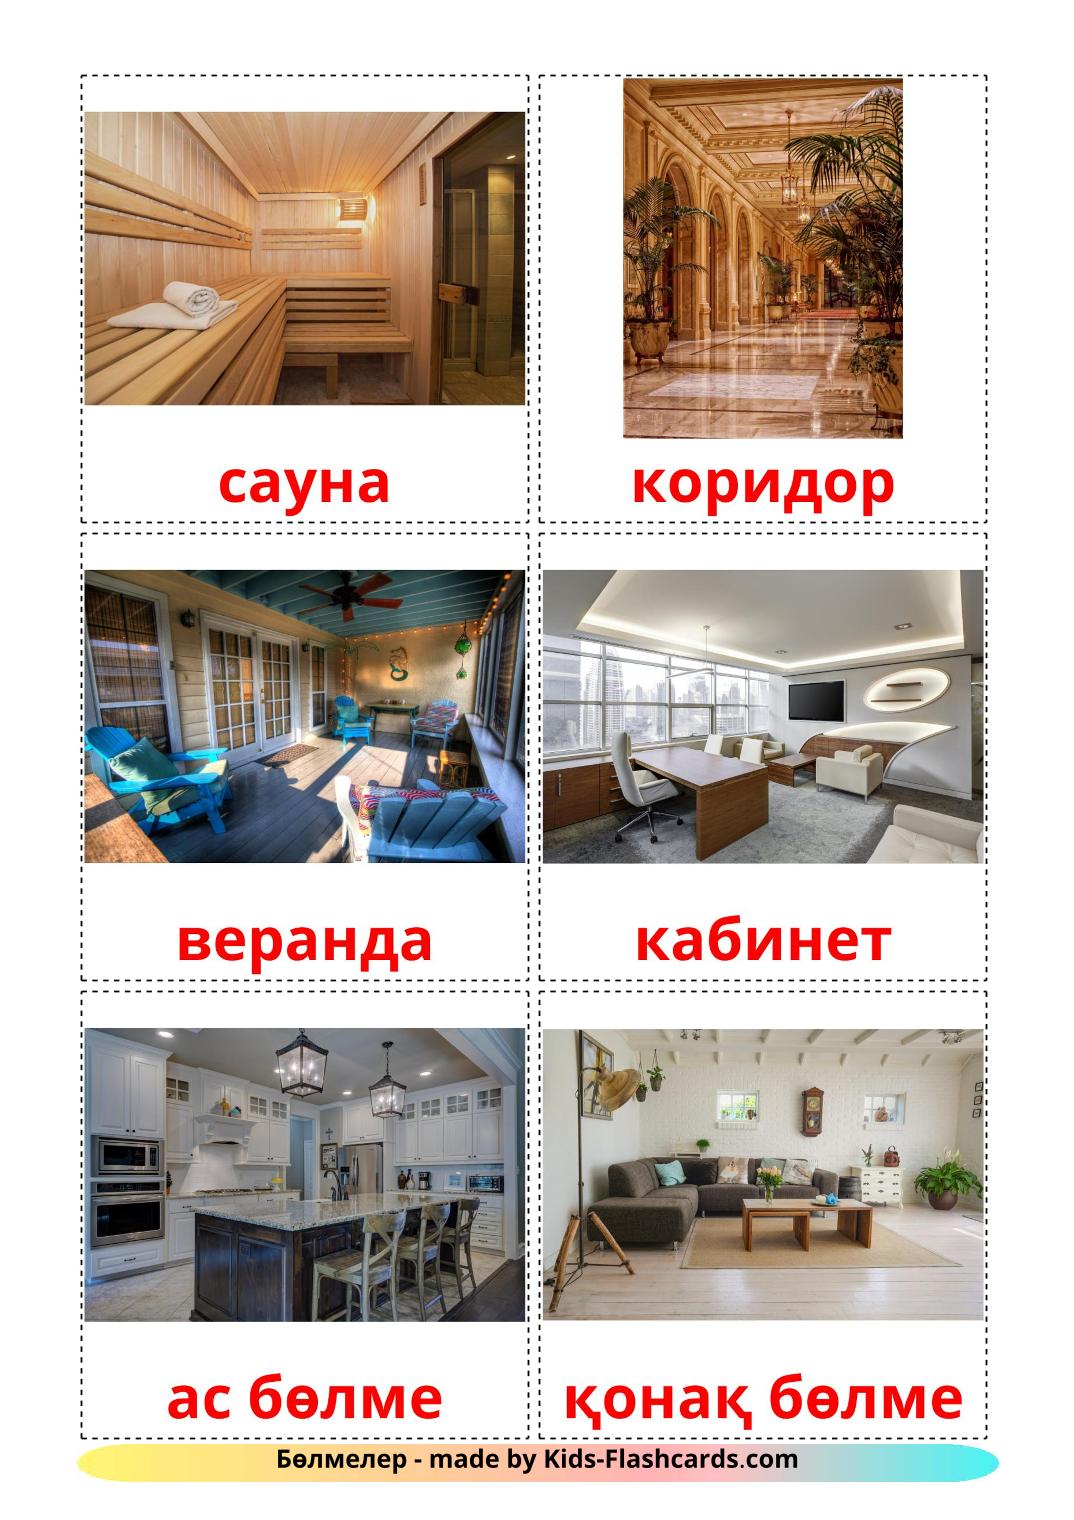 Kamers - 17 gratis printbare kazakhe kaarten